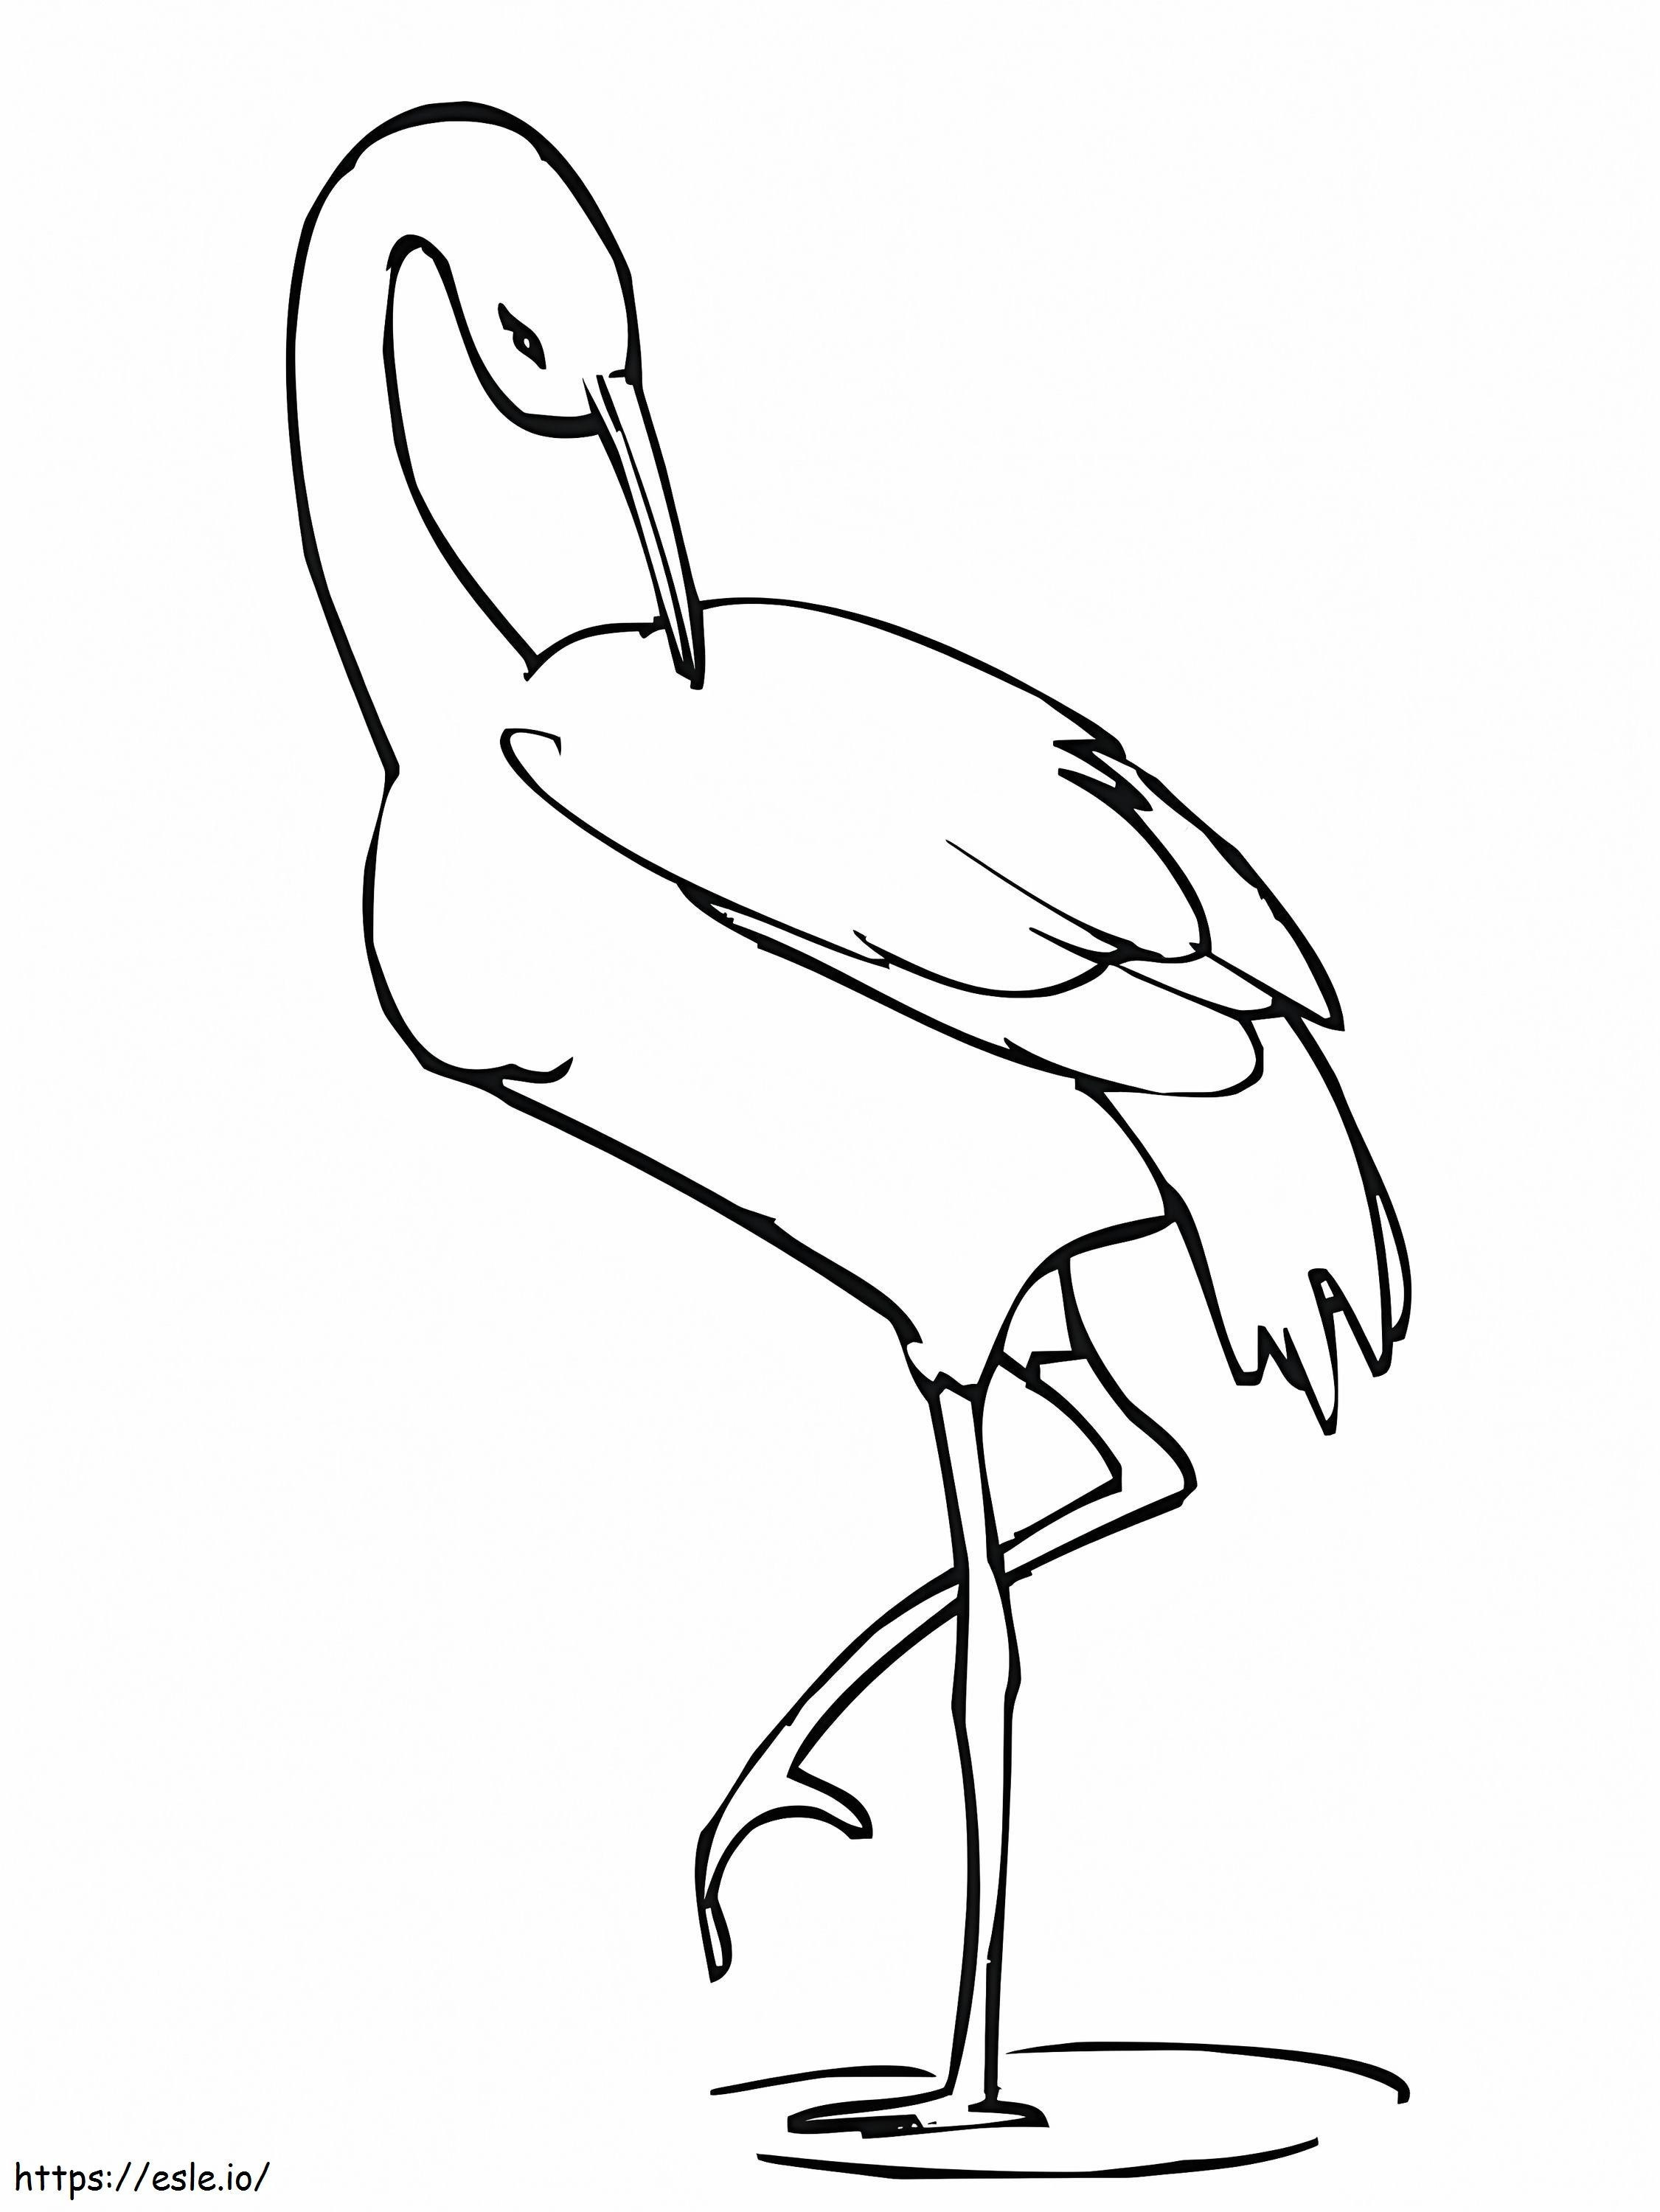 Normal Crane coloring page